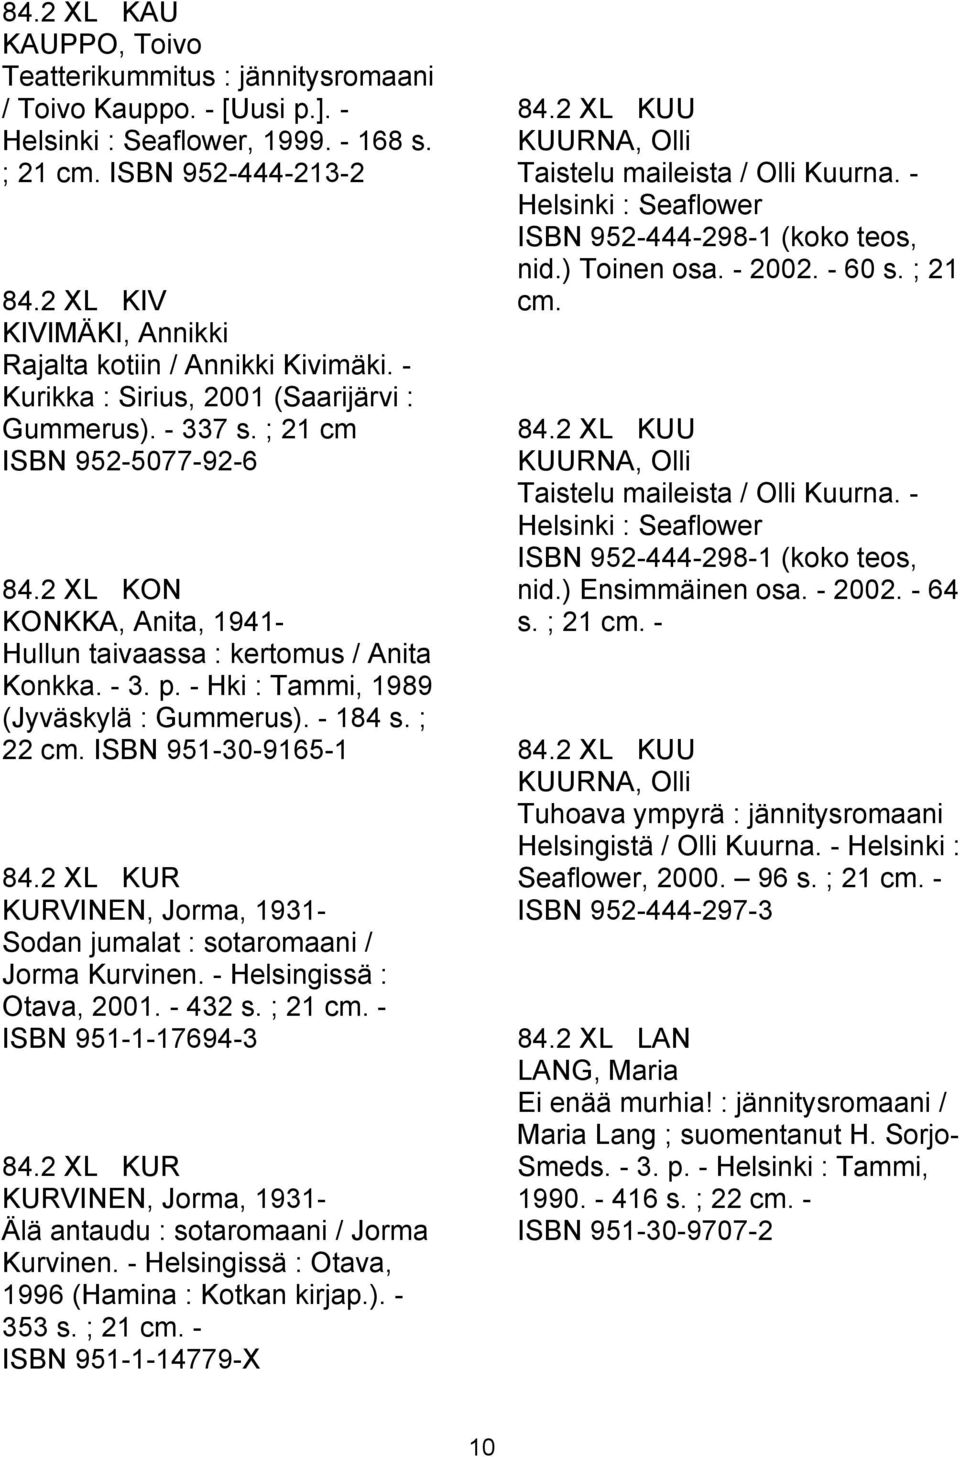 2 XL KON KONKKA, Anita, 1941- Hullun taivaassa : kertomus / Anita Konkka. - 3. p. - Hki : Tammi, 1989 (Jyväskylä : Gummerus). - 184 s. ; 22 cm. ISBN 951-30-9165-1 84.